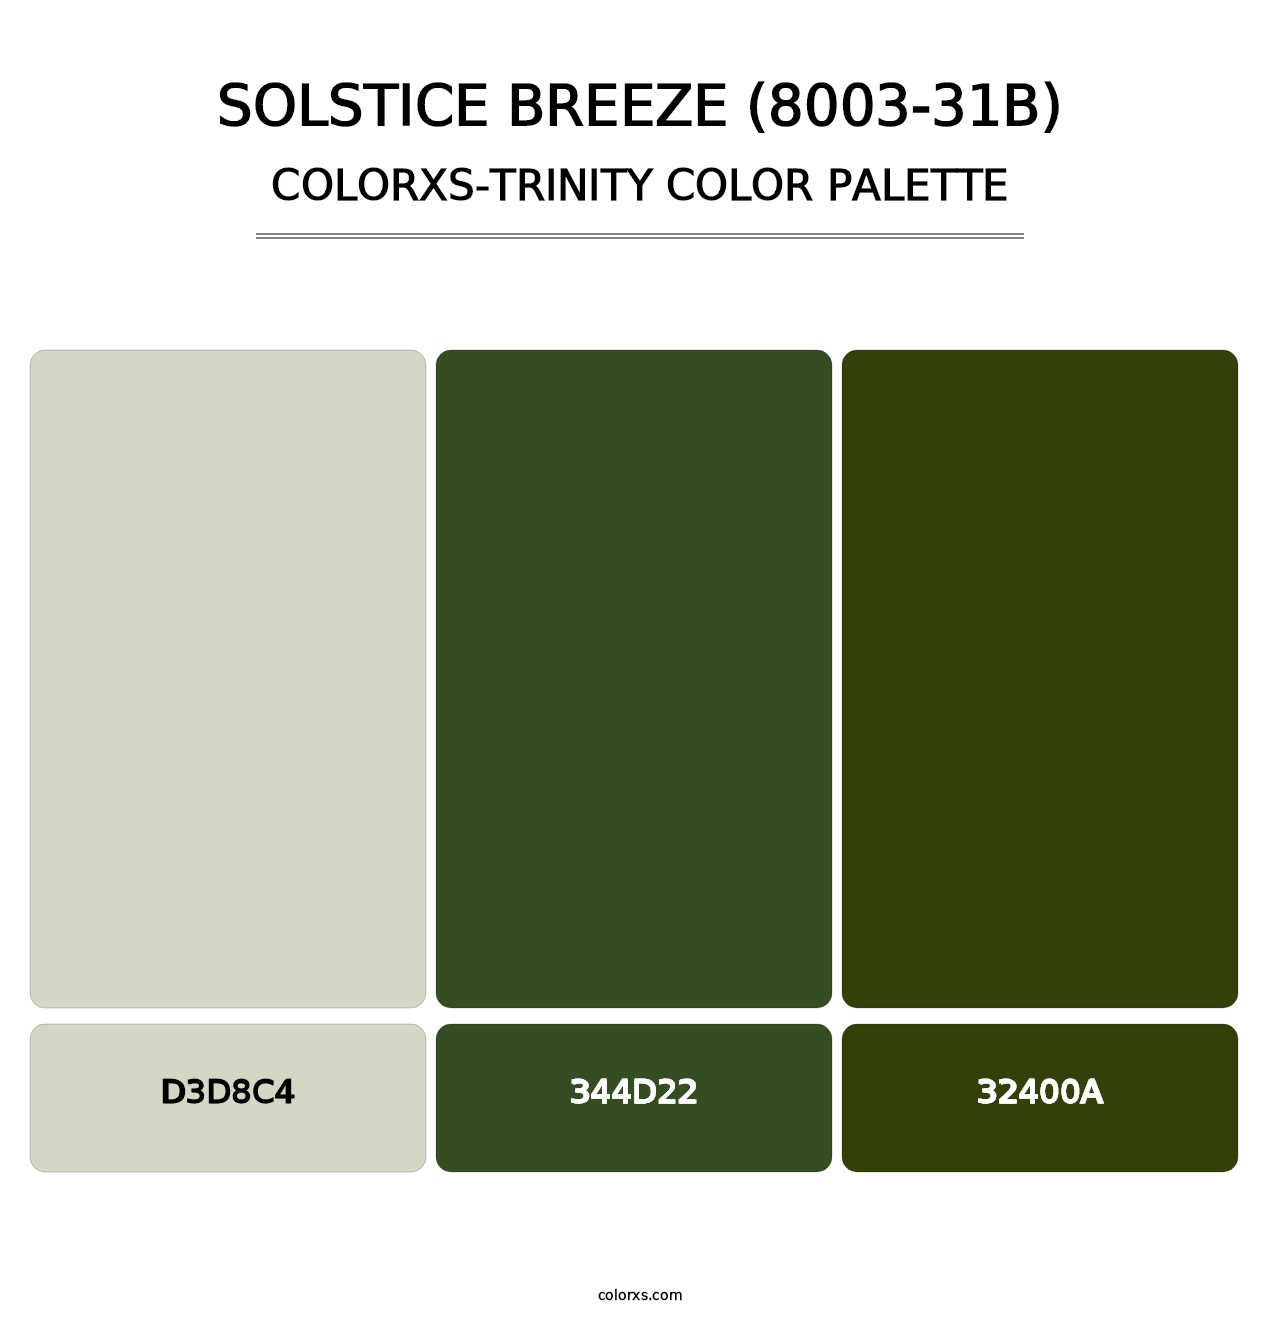 Solstice Breeze (8003-31B) - Colorxs Trinity Palette